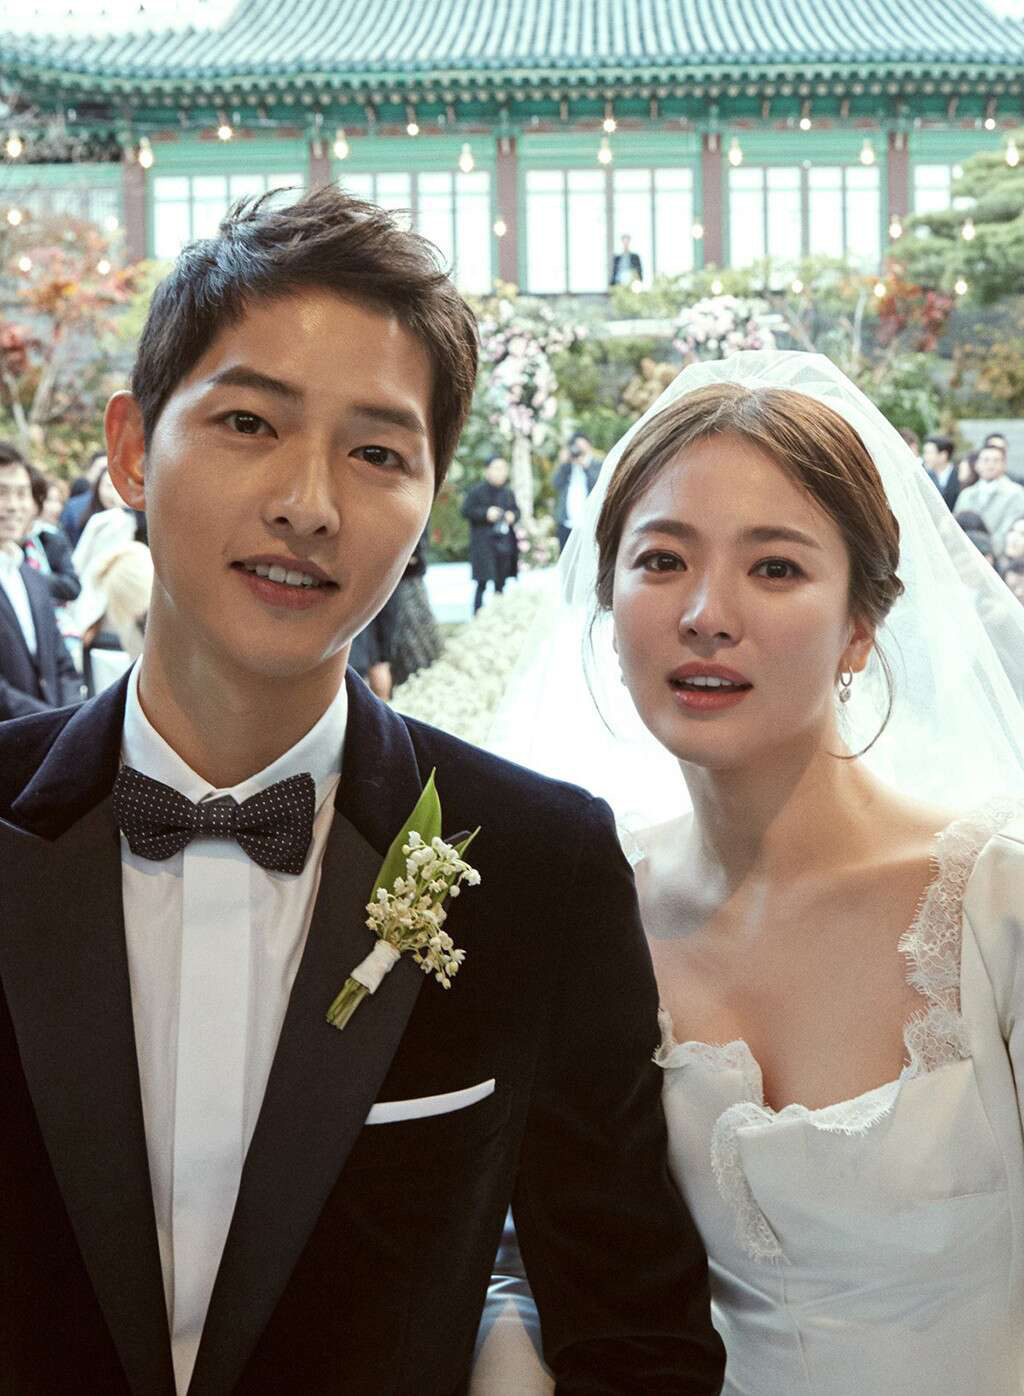 Song Hye Kyo bỗng có động thái mới làm dấy lên nghi vấn nhớ thương chồng cũ Song Joong Ki sau 9 tháng ly hôn - Ảnh 5.